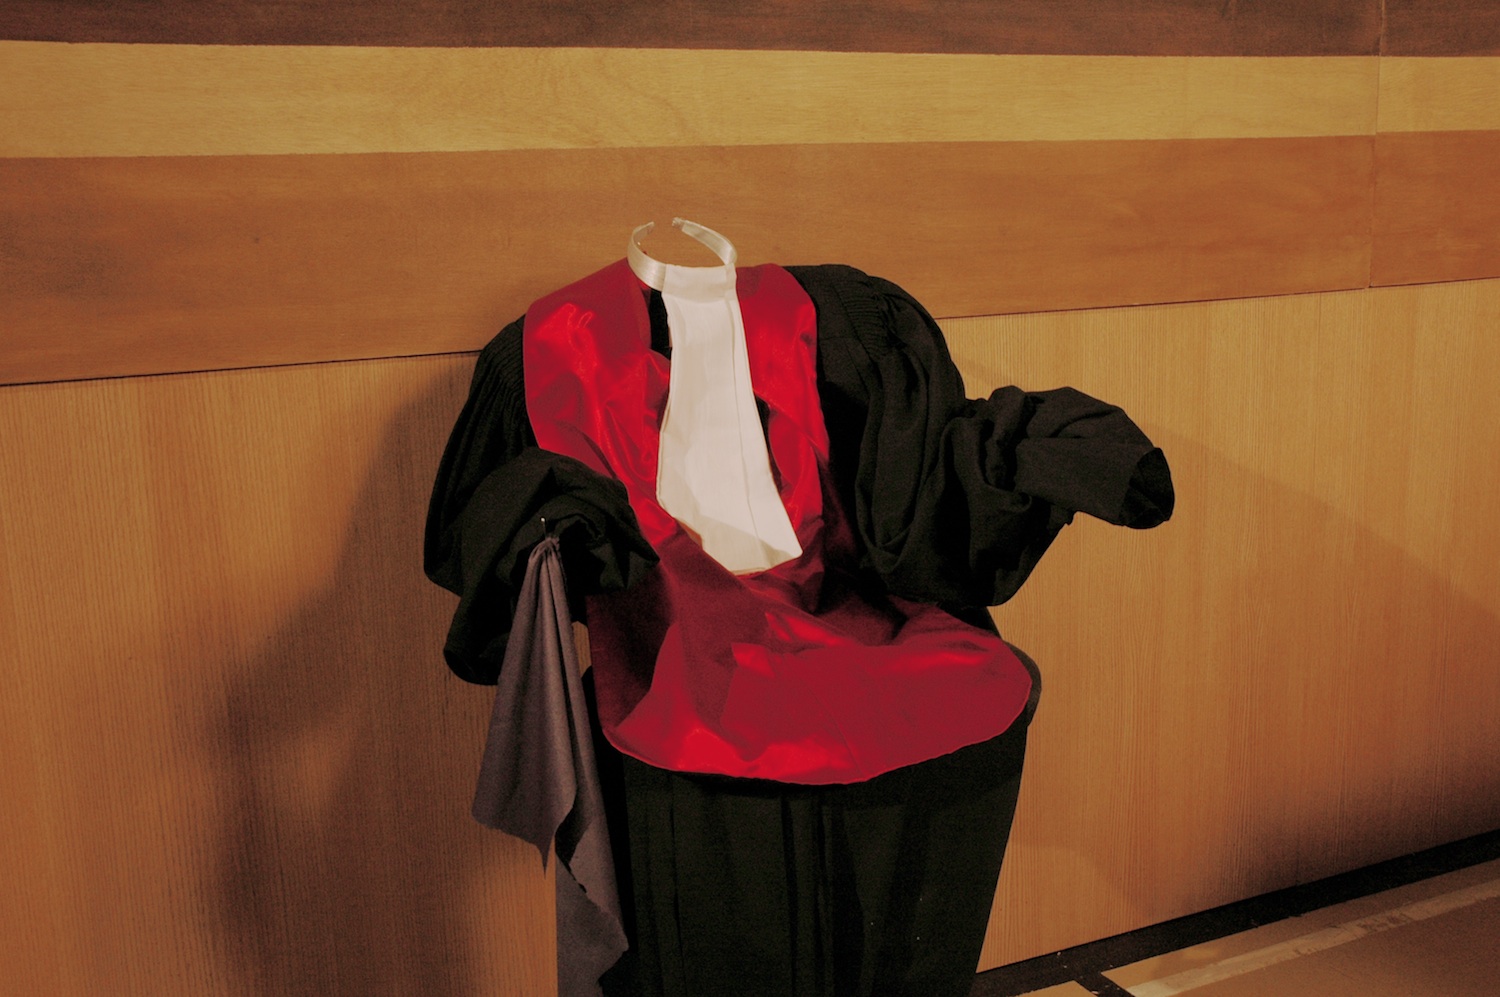 Empty Judge’s Robe
